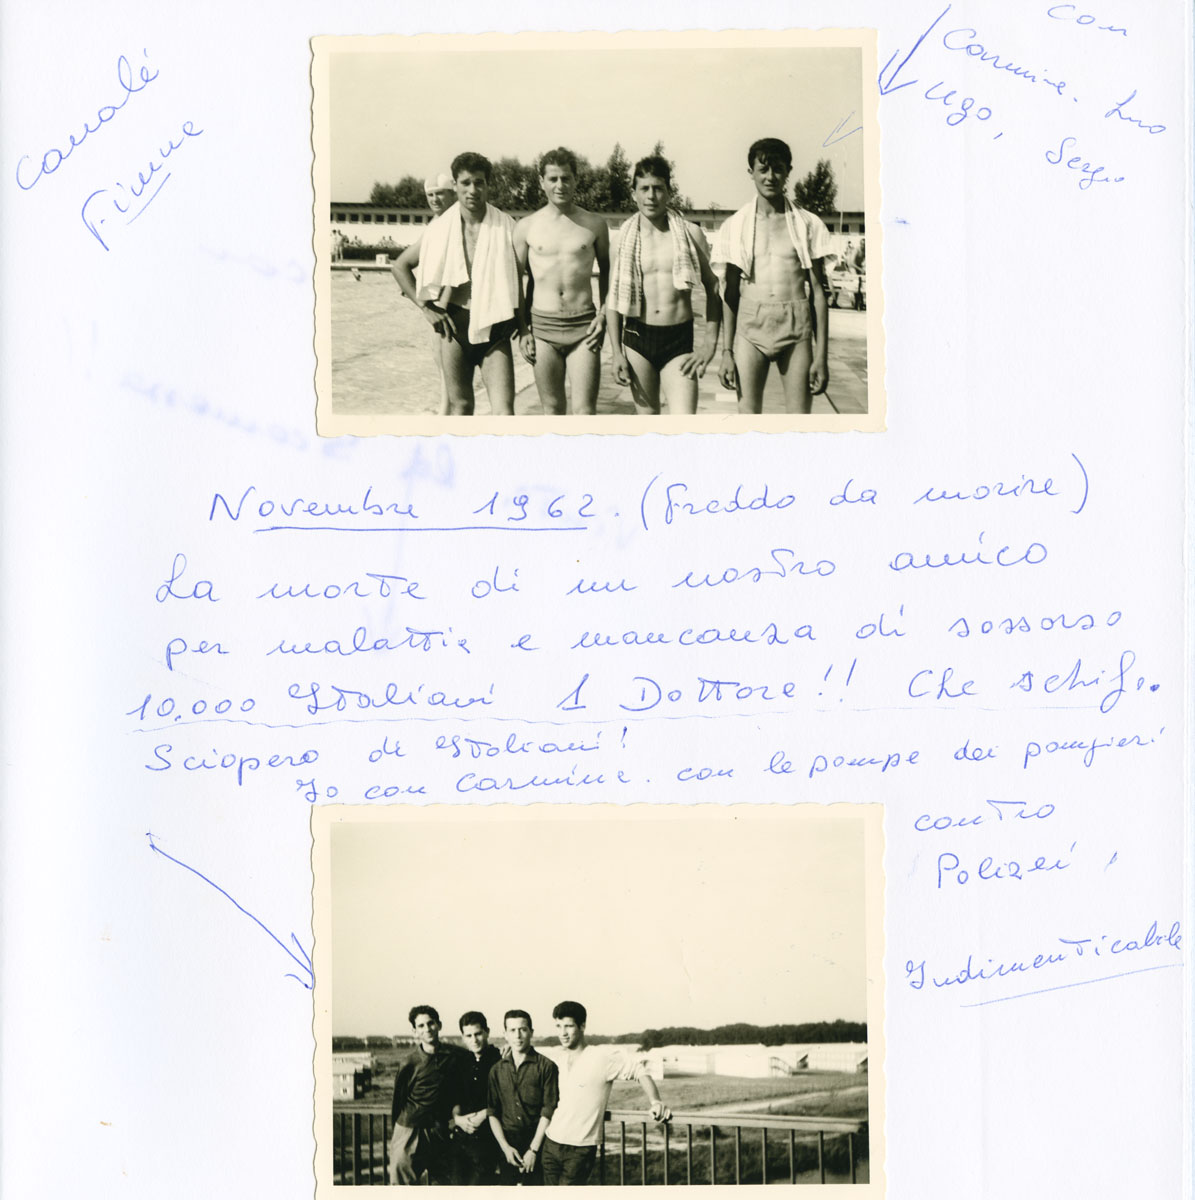 Seite aus Fotoalbum: oben: Foto von vier jungen Männern in Badehose im Schwimmbad oder am Mittellandkanal; unten: eine weitere Gruppenaufnahme von vier jungen Männern mit handschriftlichem Kommentar und Pfeil